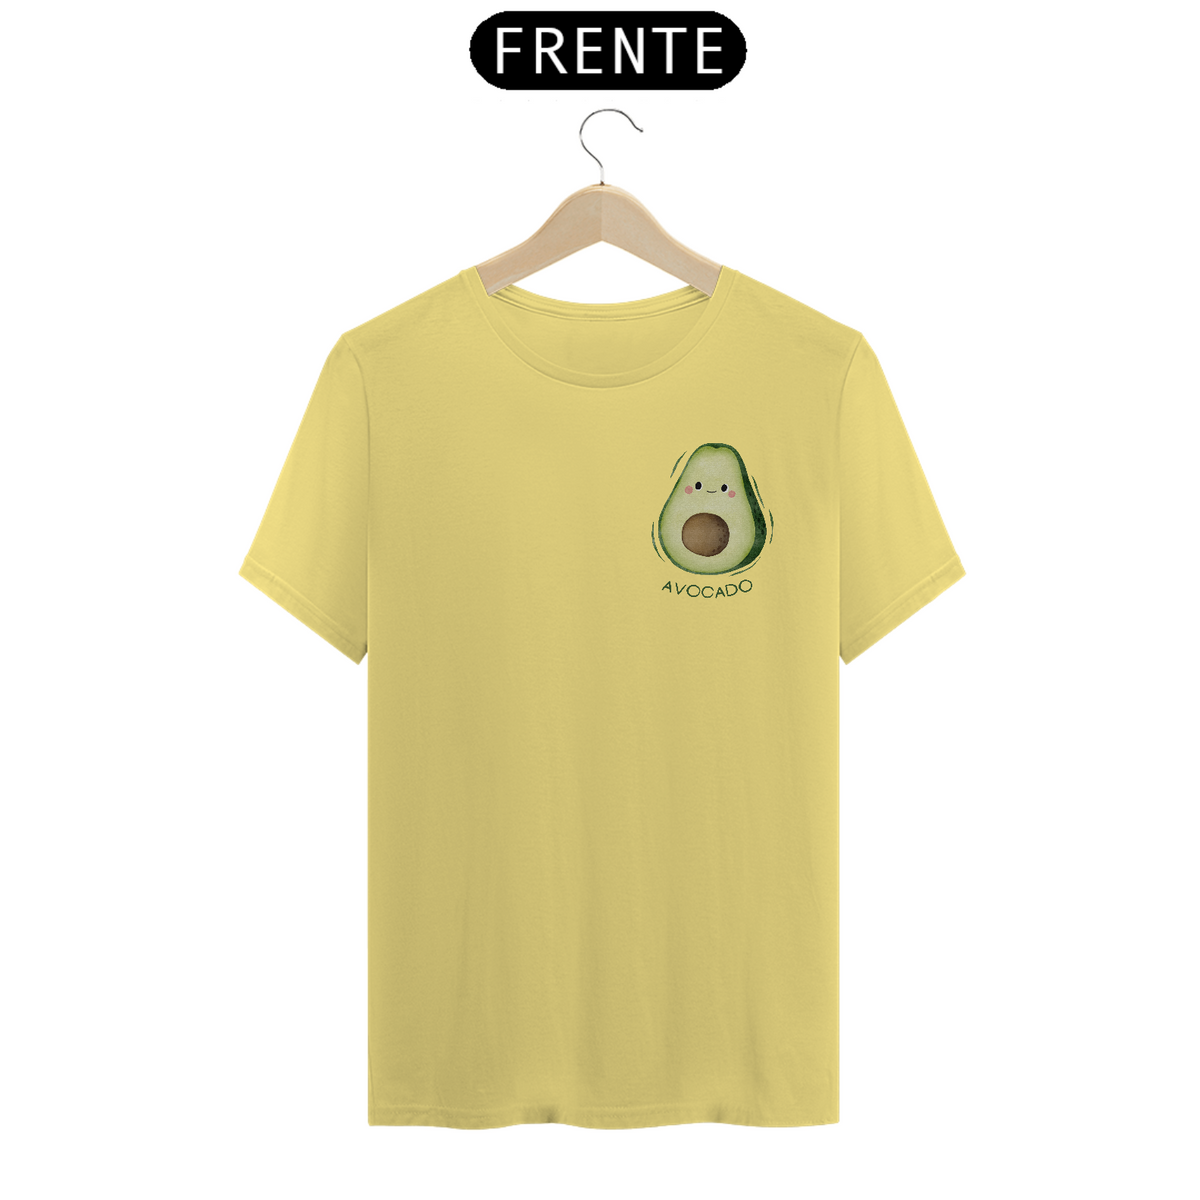 Nome do produto: T-shirt Avocado